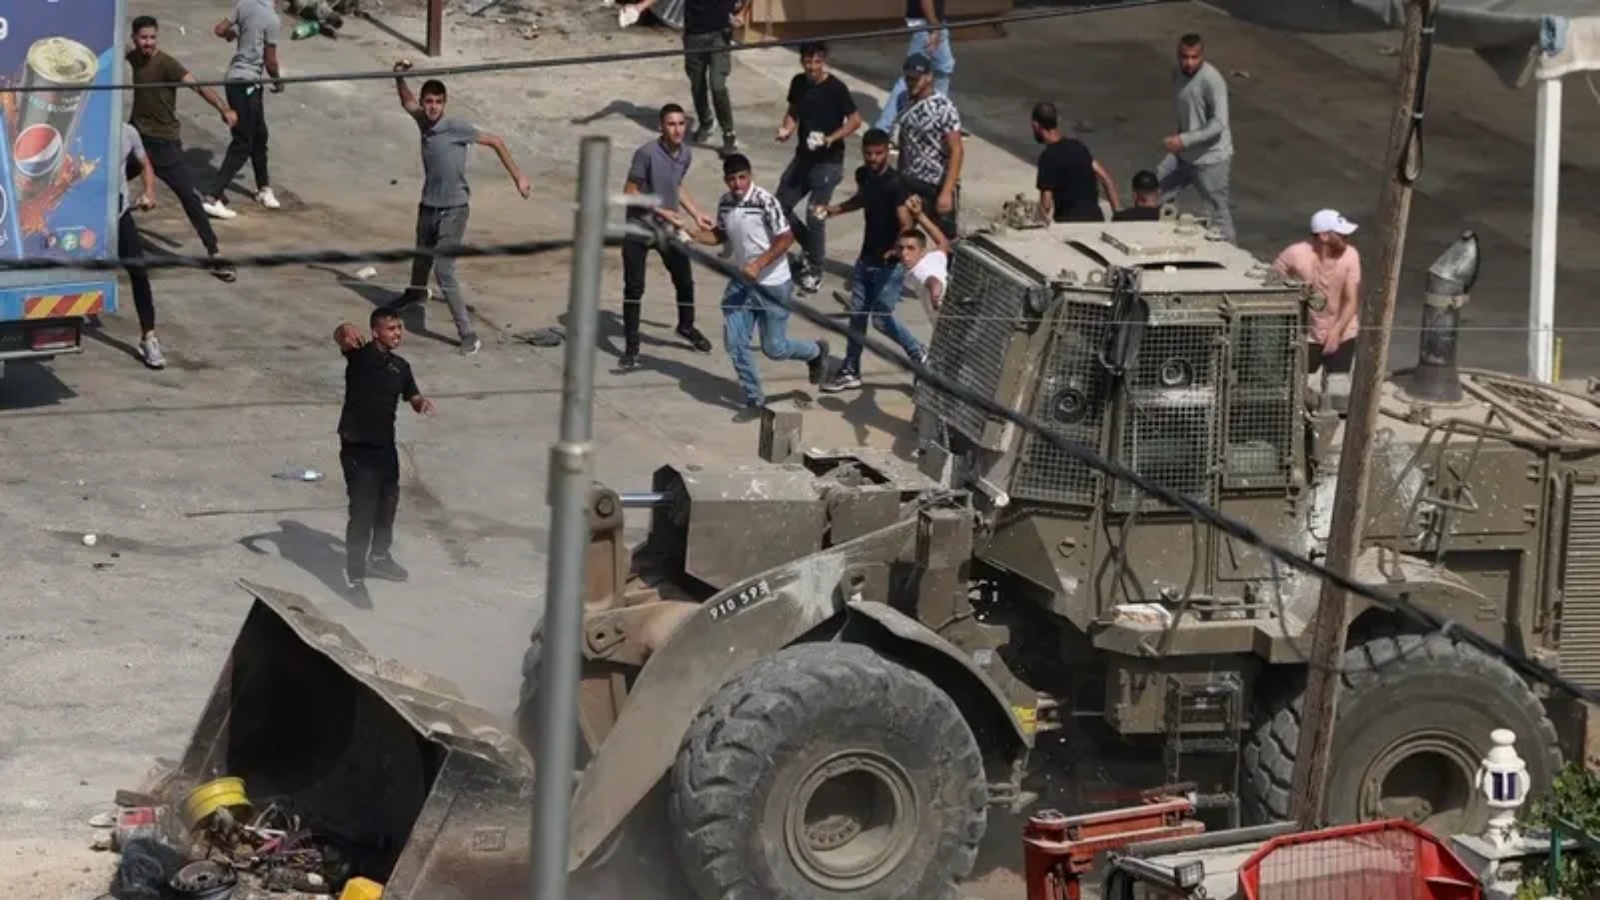 فلسطينيون يرشقون مركبات للجيش الإسرائيلي بالحجارة خلال اشتباكات في بلدة الرجيب شرق مدينة نابلس بالضفة الغربية المحتلة في 30 أغسطس 2022 ، بعد أن فتح فلسطينيون النار على إسرائيليين تسللوا إلى المدينة